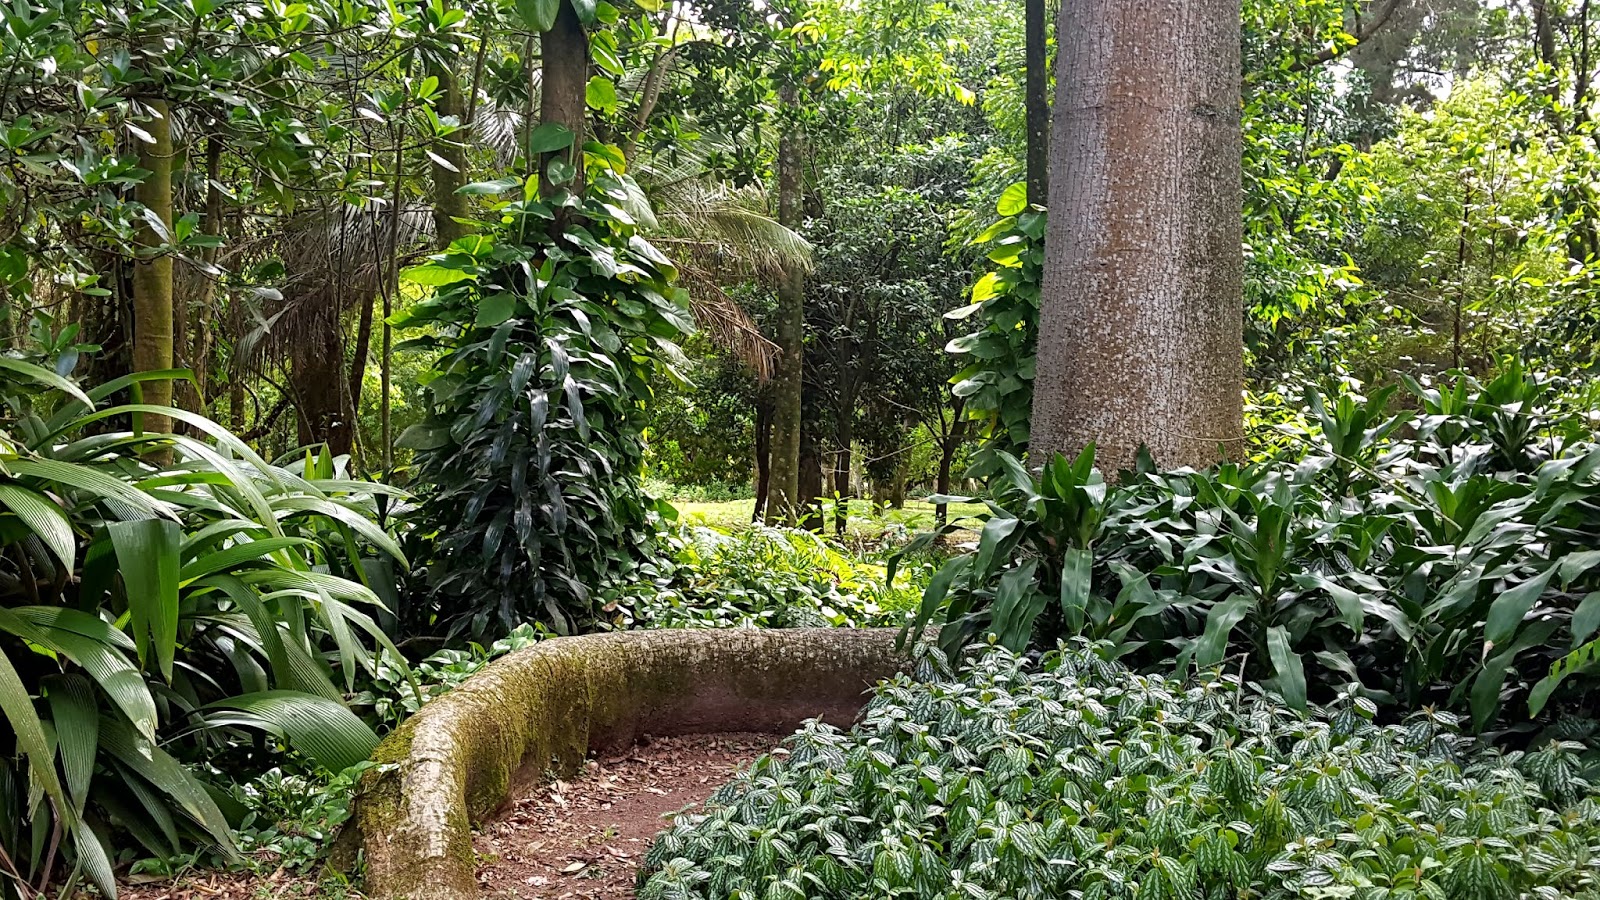 Jardim Botânico